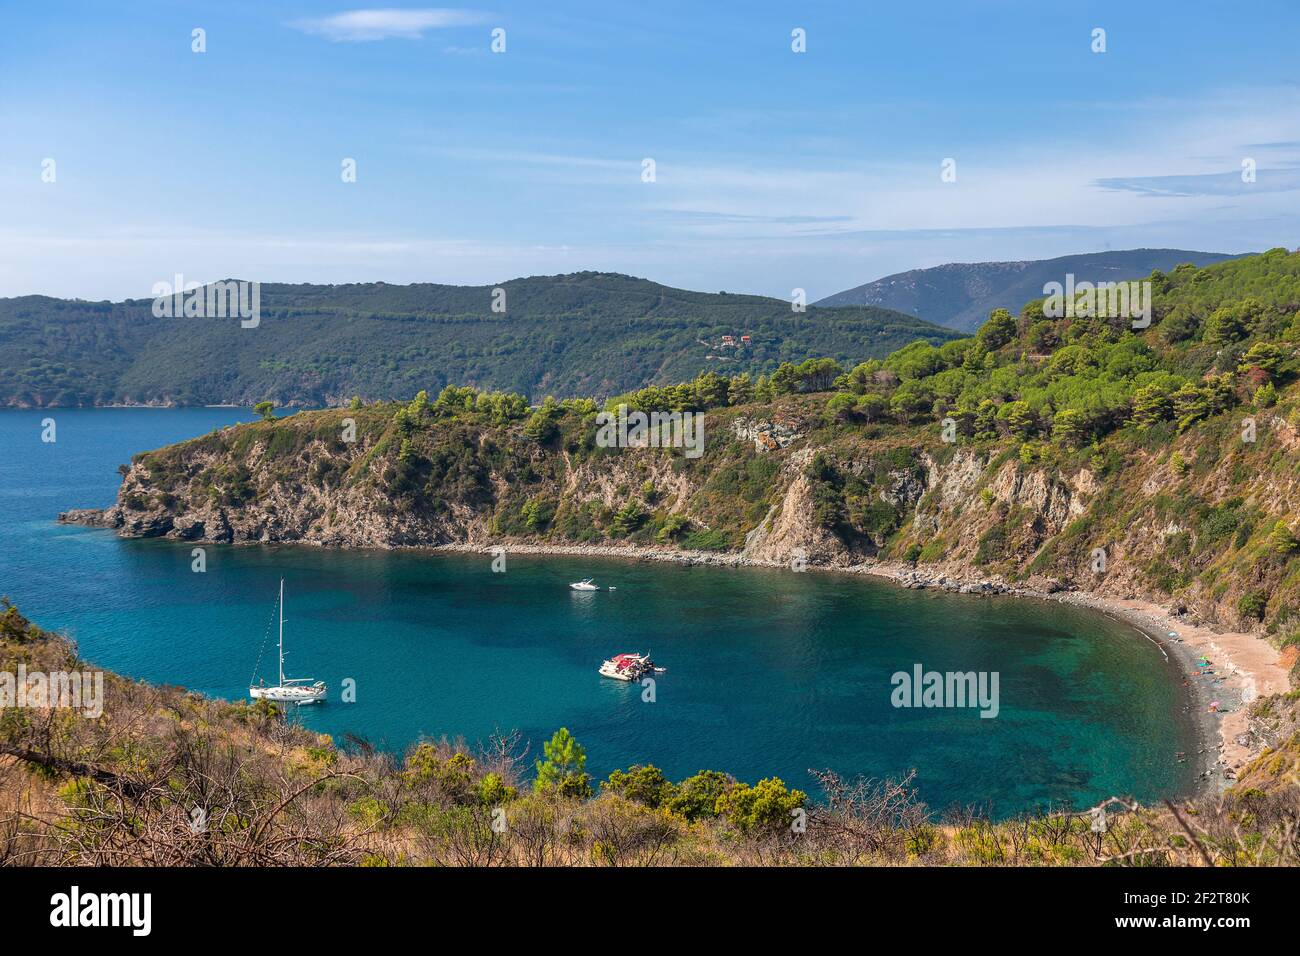 Schöne Meereslandschaft an einem kleinen wilden Strand der Insel Elba in der smaragdgrünen Lagune mit Segelboot. Toskana, Italien. Stockfoto